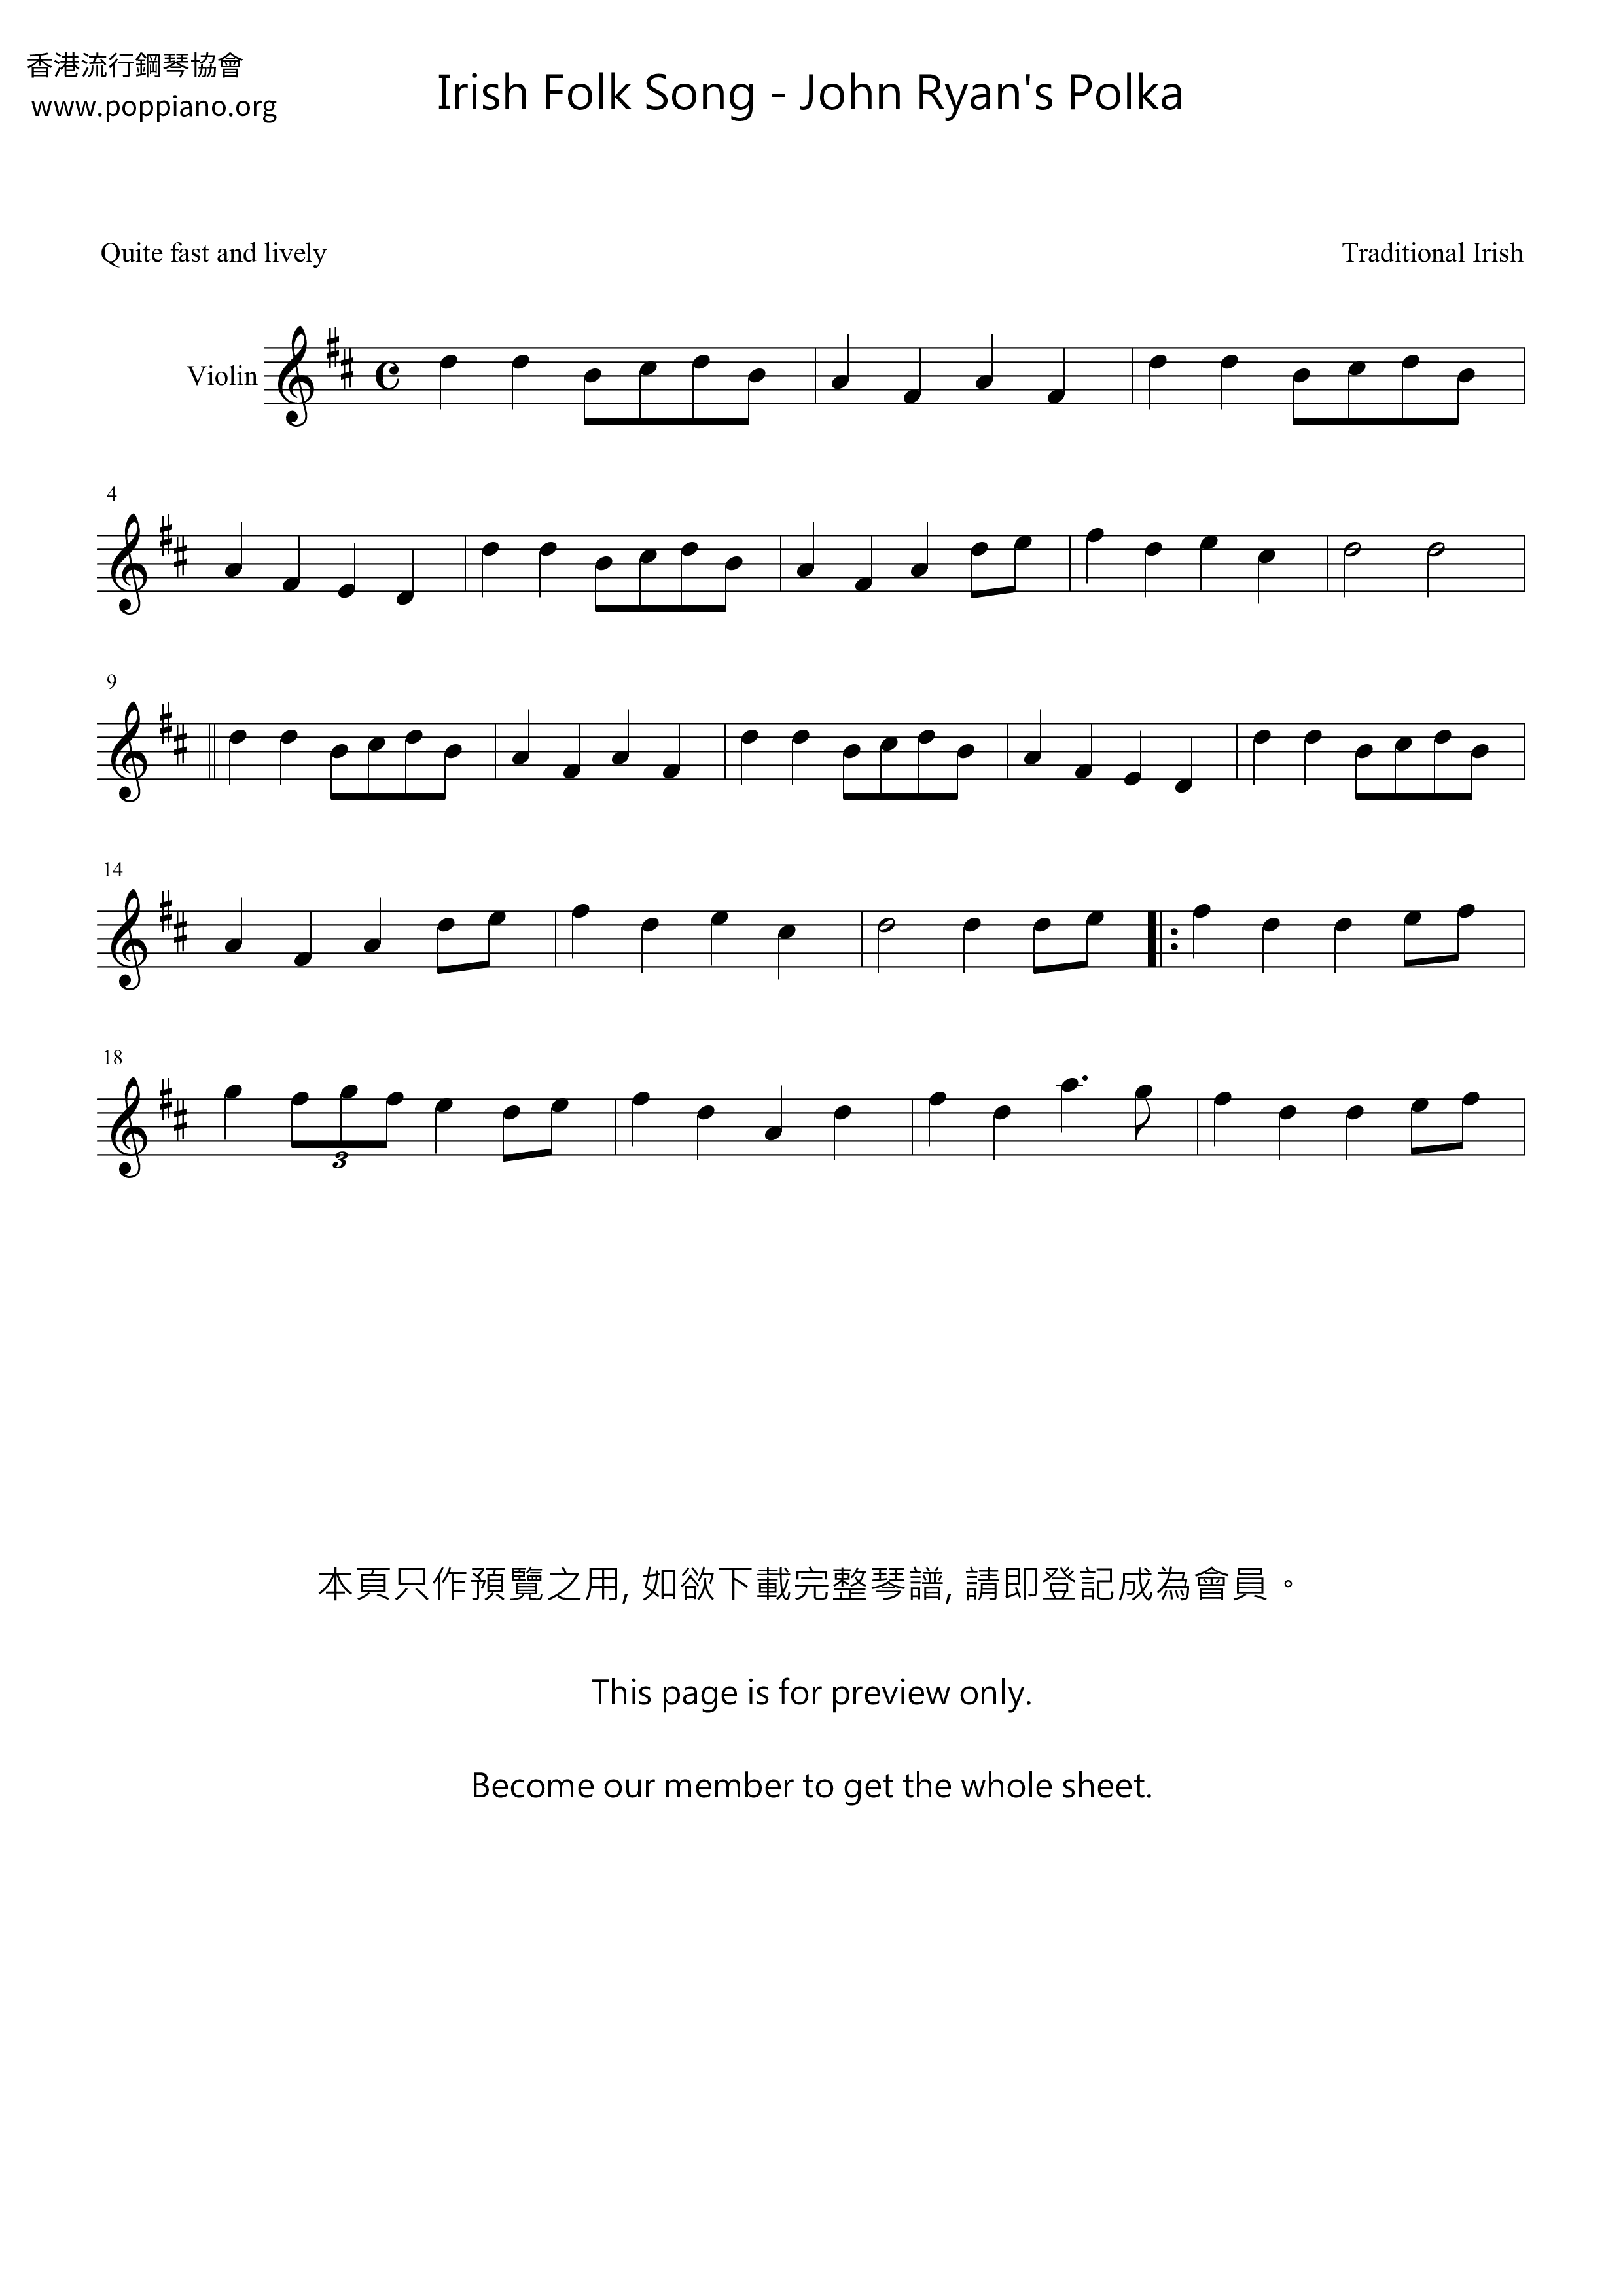 John Ryan's Polka Score